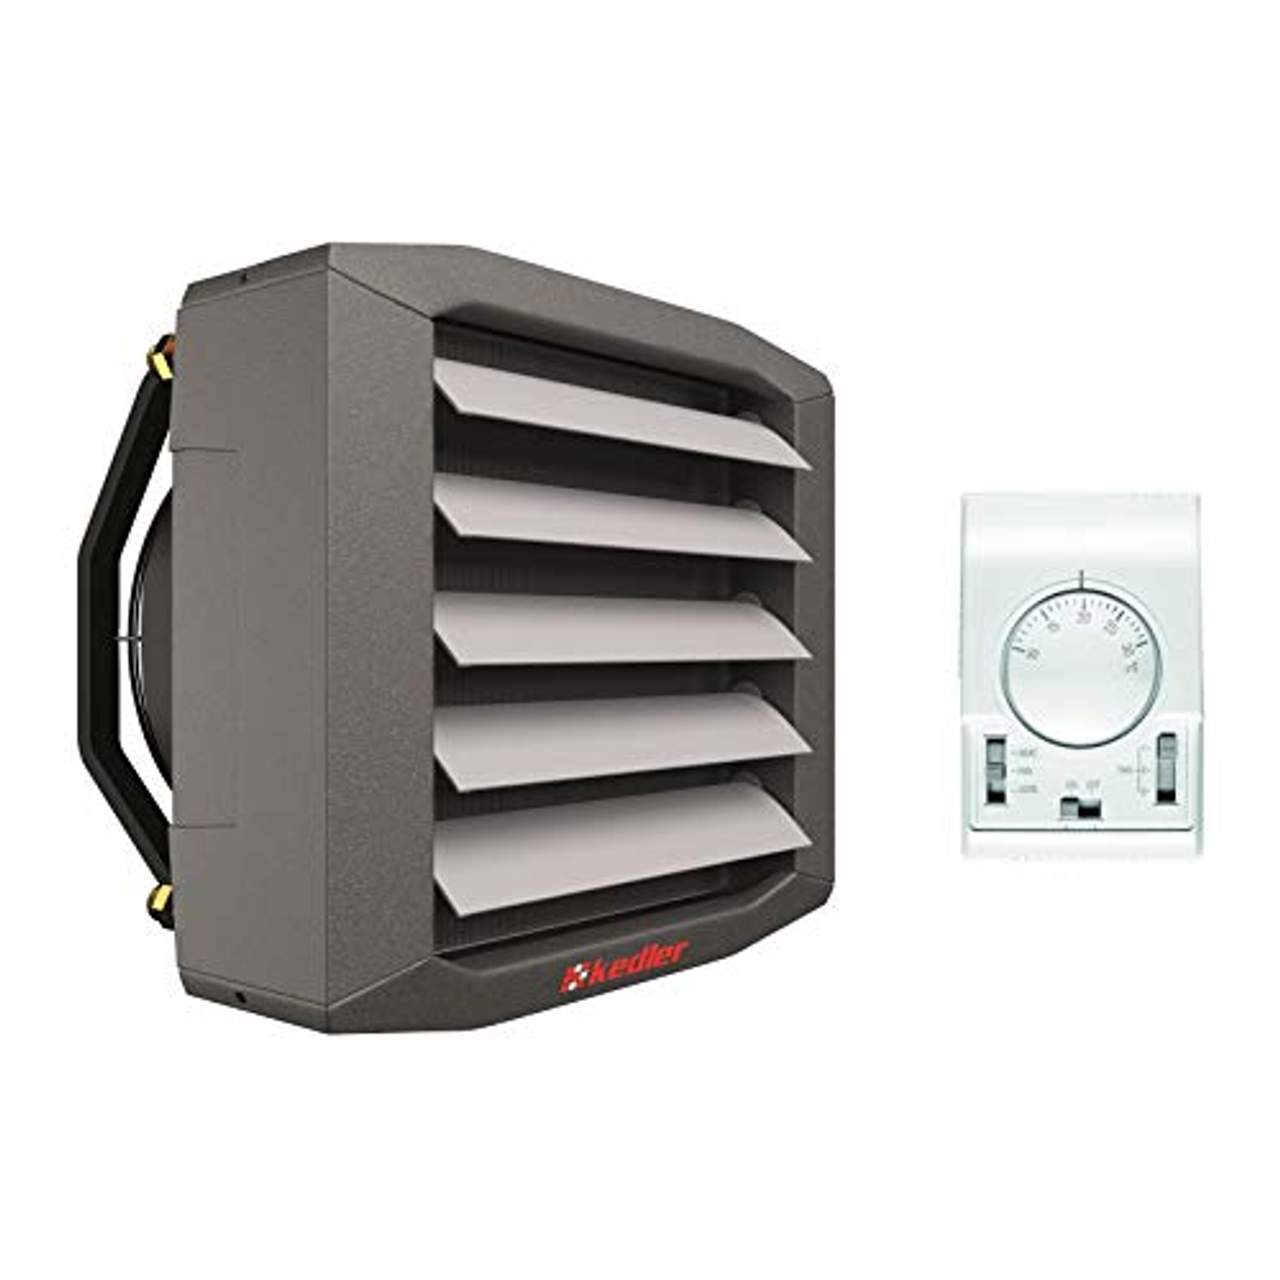 Luftheizer 40  kW Montagekonsolle inkl. Steuerung Thermostat 